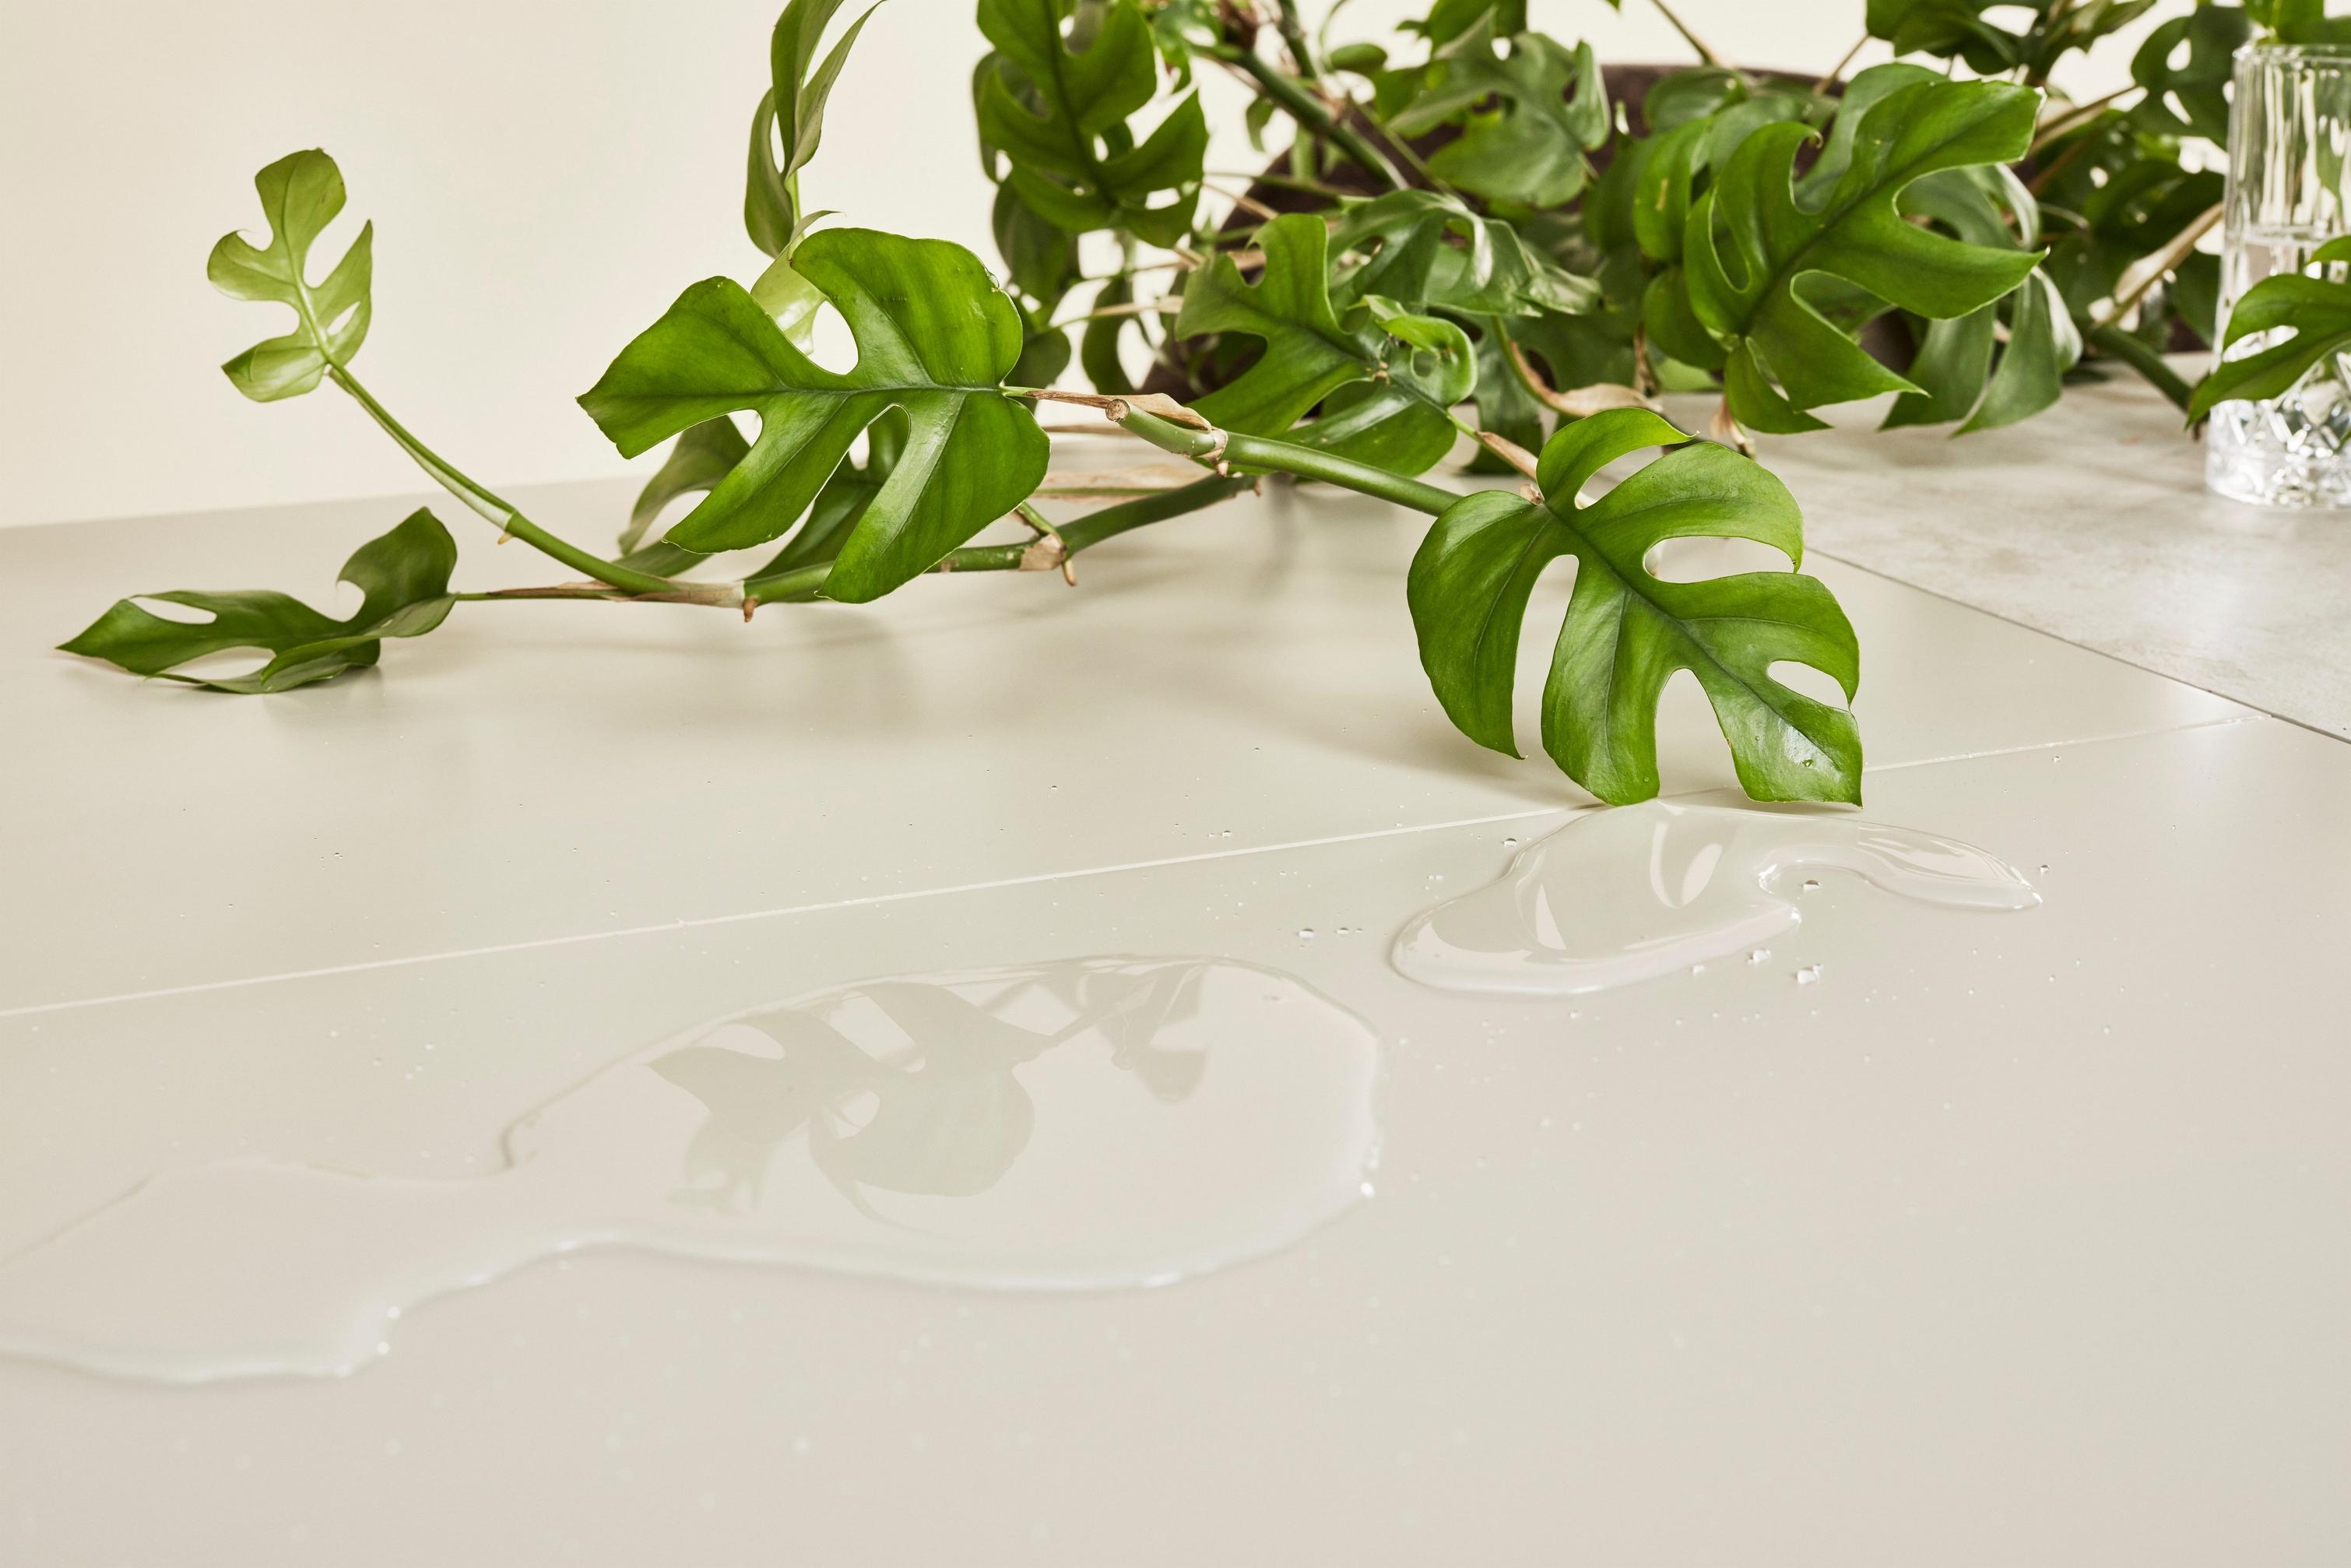 Monstera vert sur table en finition laquée, avec des feuilles reflétant l’eau claire.